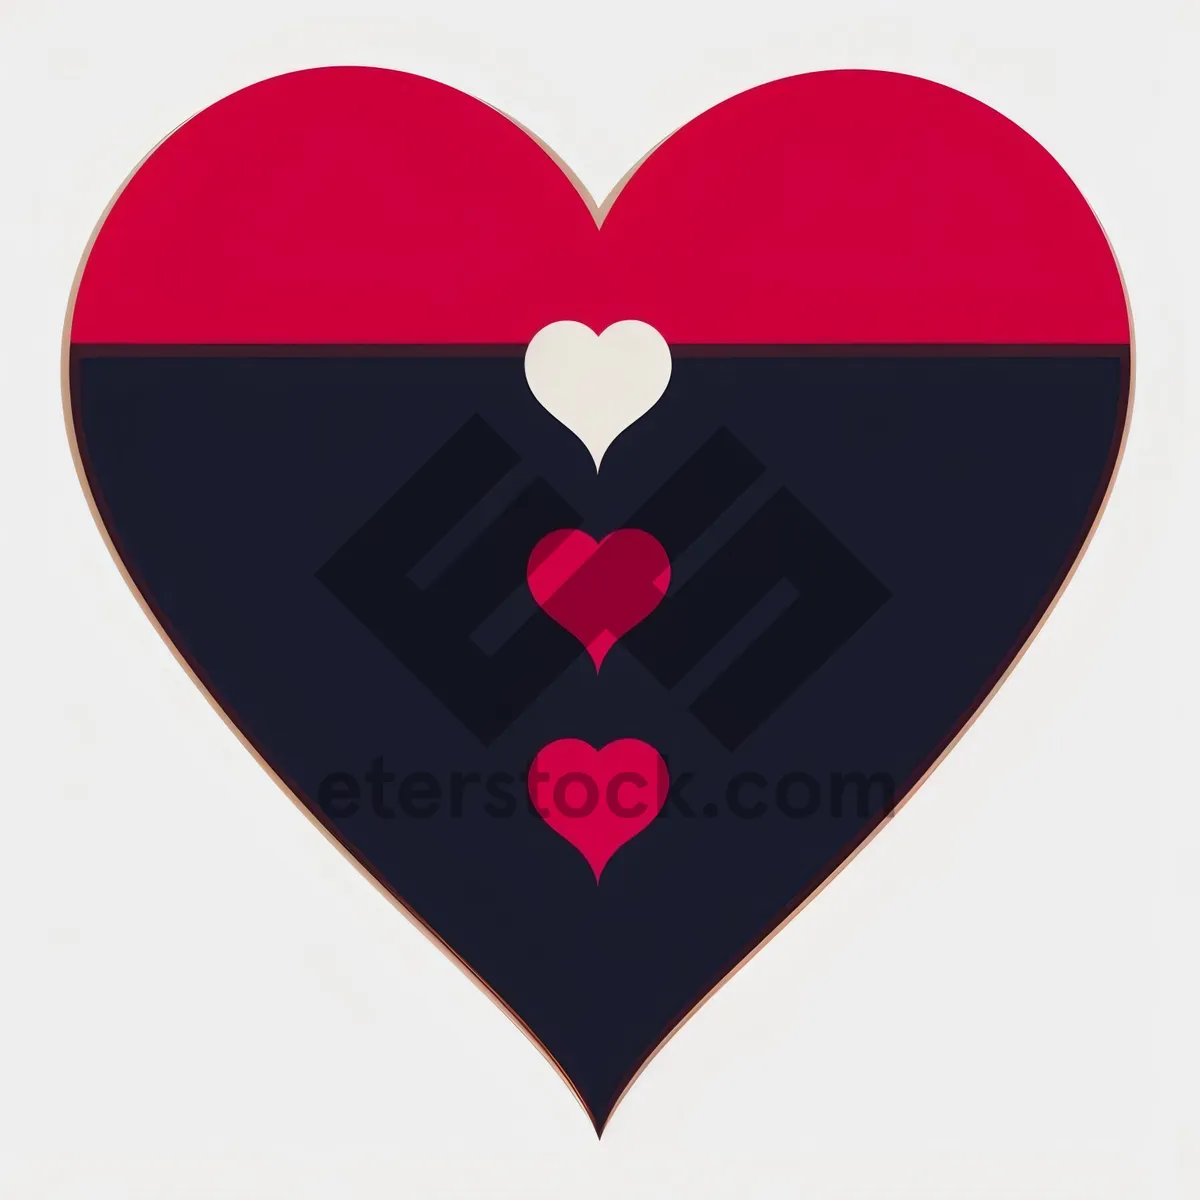 Picture of LoveIcon Heart Symbol - Romantic Valentine Graphic Design